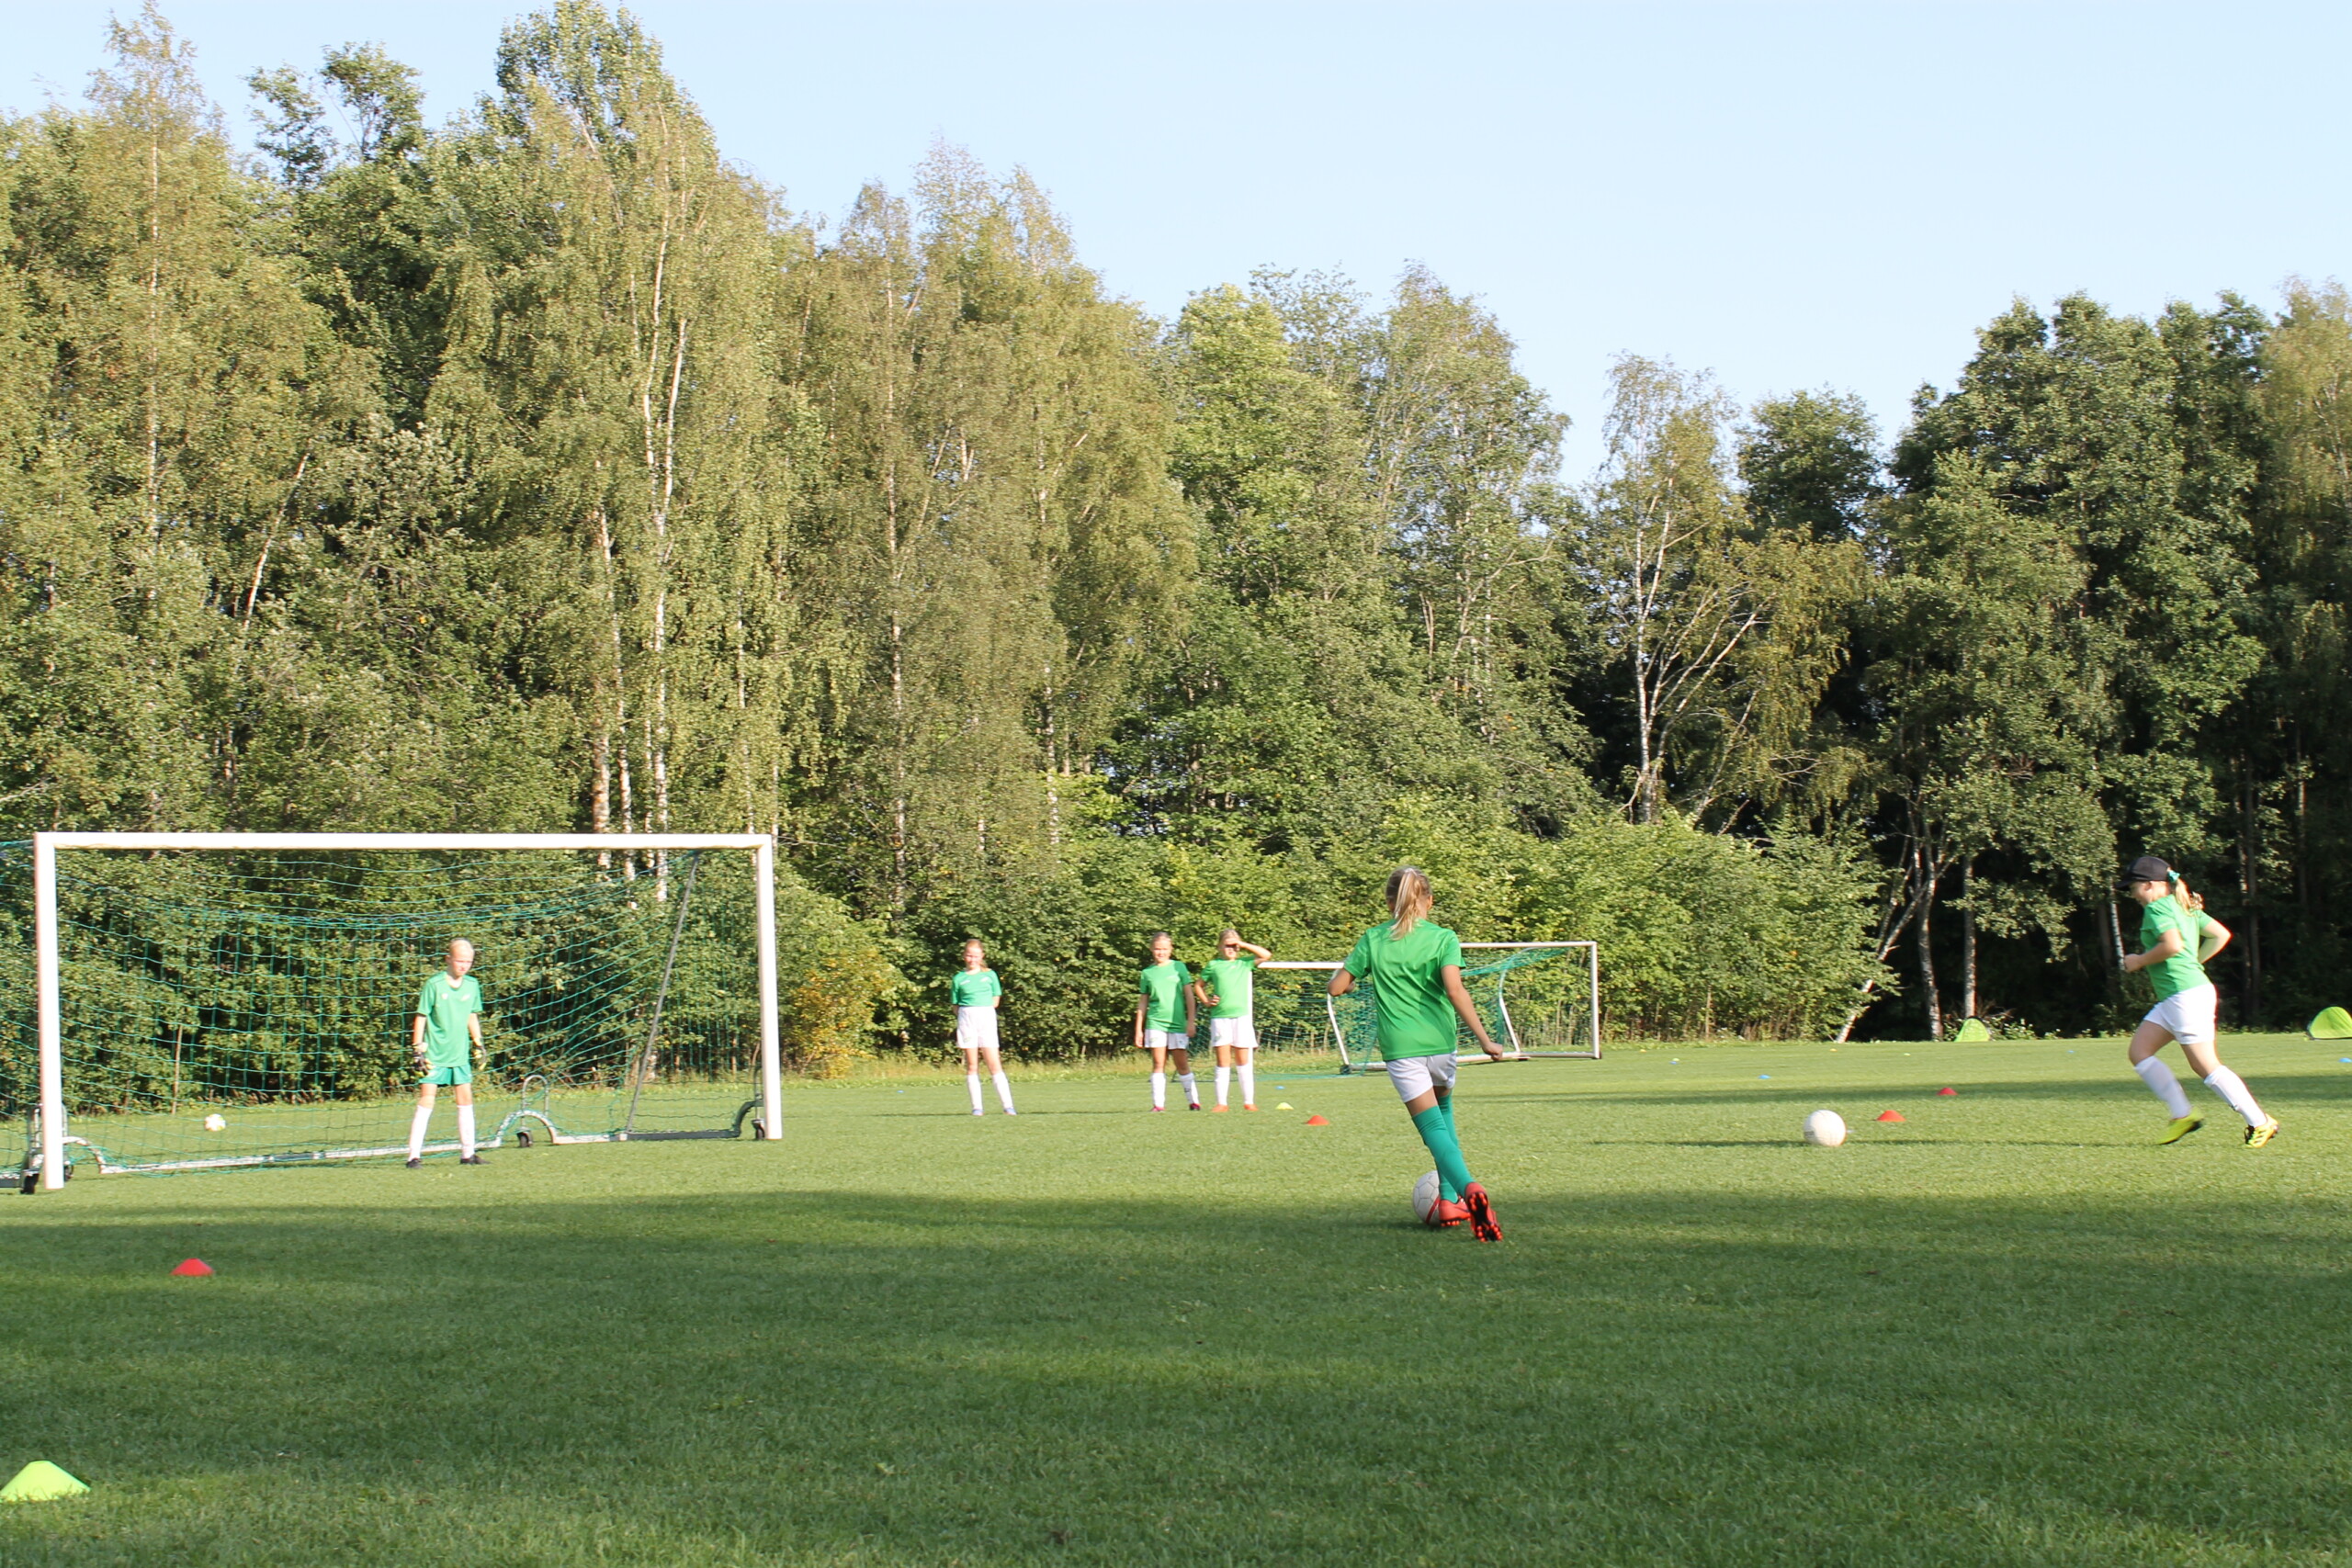 EIF:s flicklag med flickor födda 2012 och 2013 har en fotbollsträning utomhus på en gräsplan i Ekenäs. Flickorna övar på att skjuta mål.